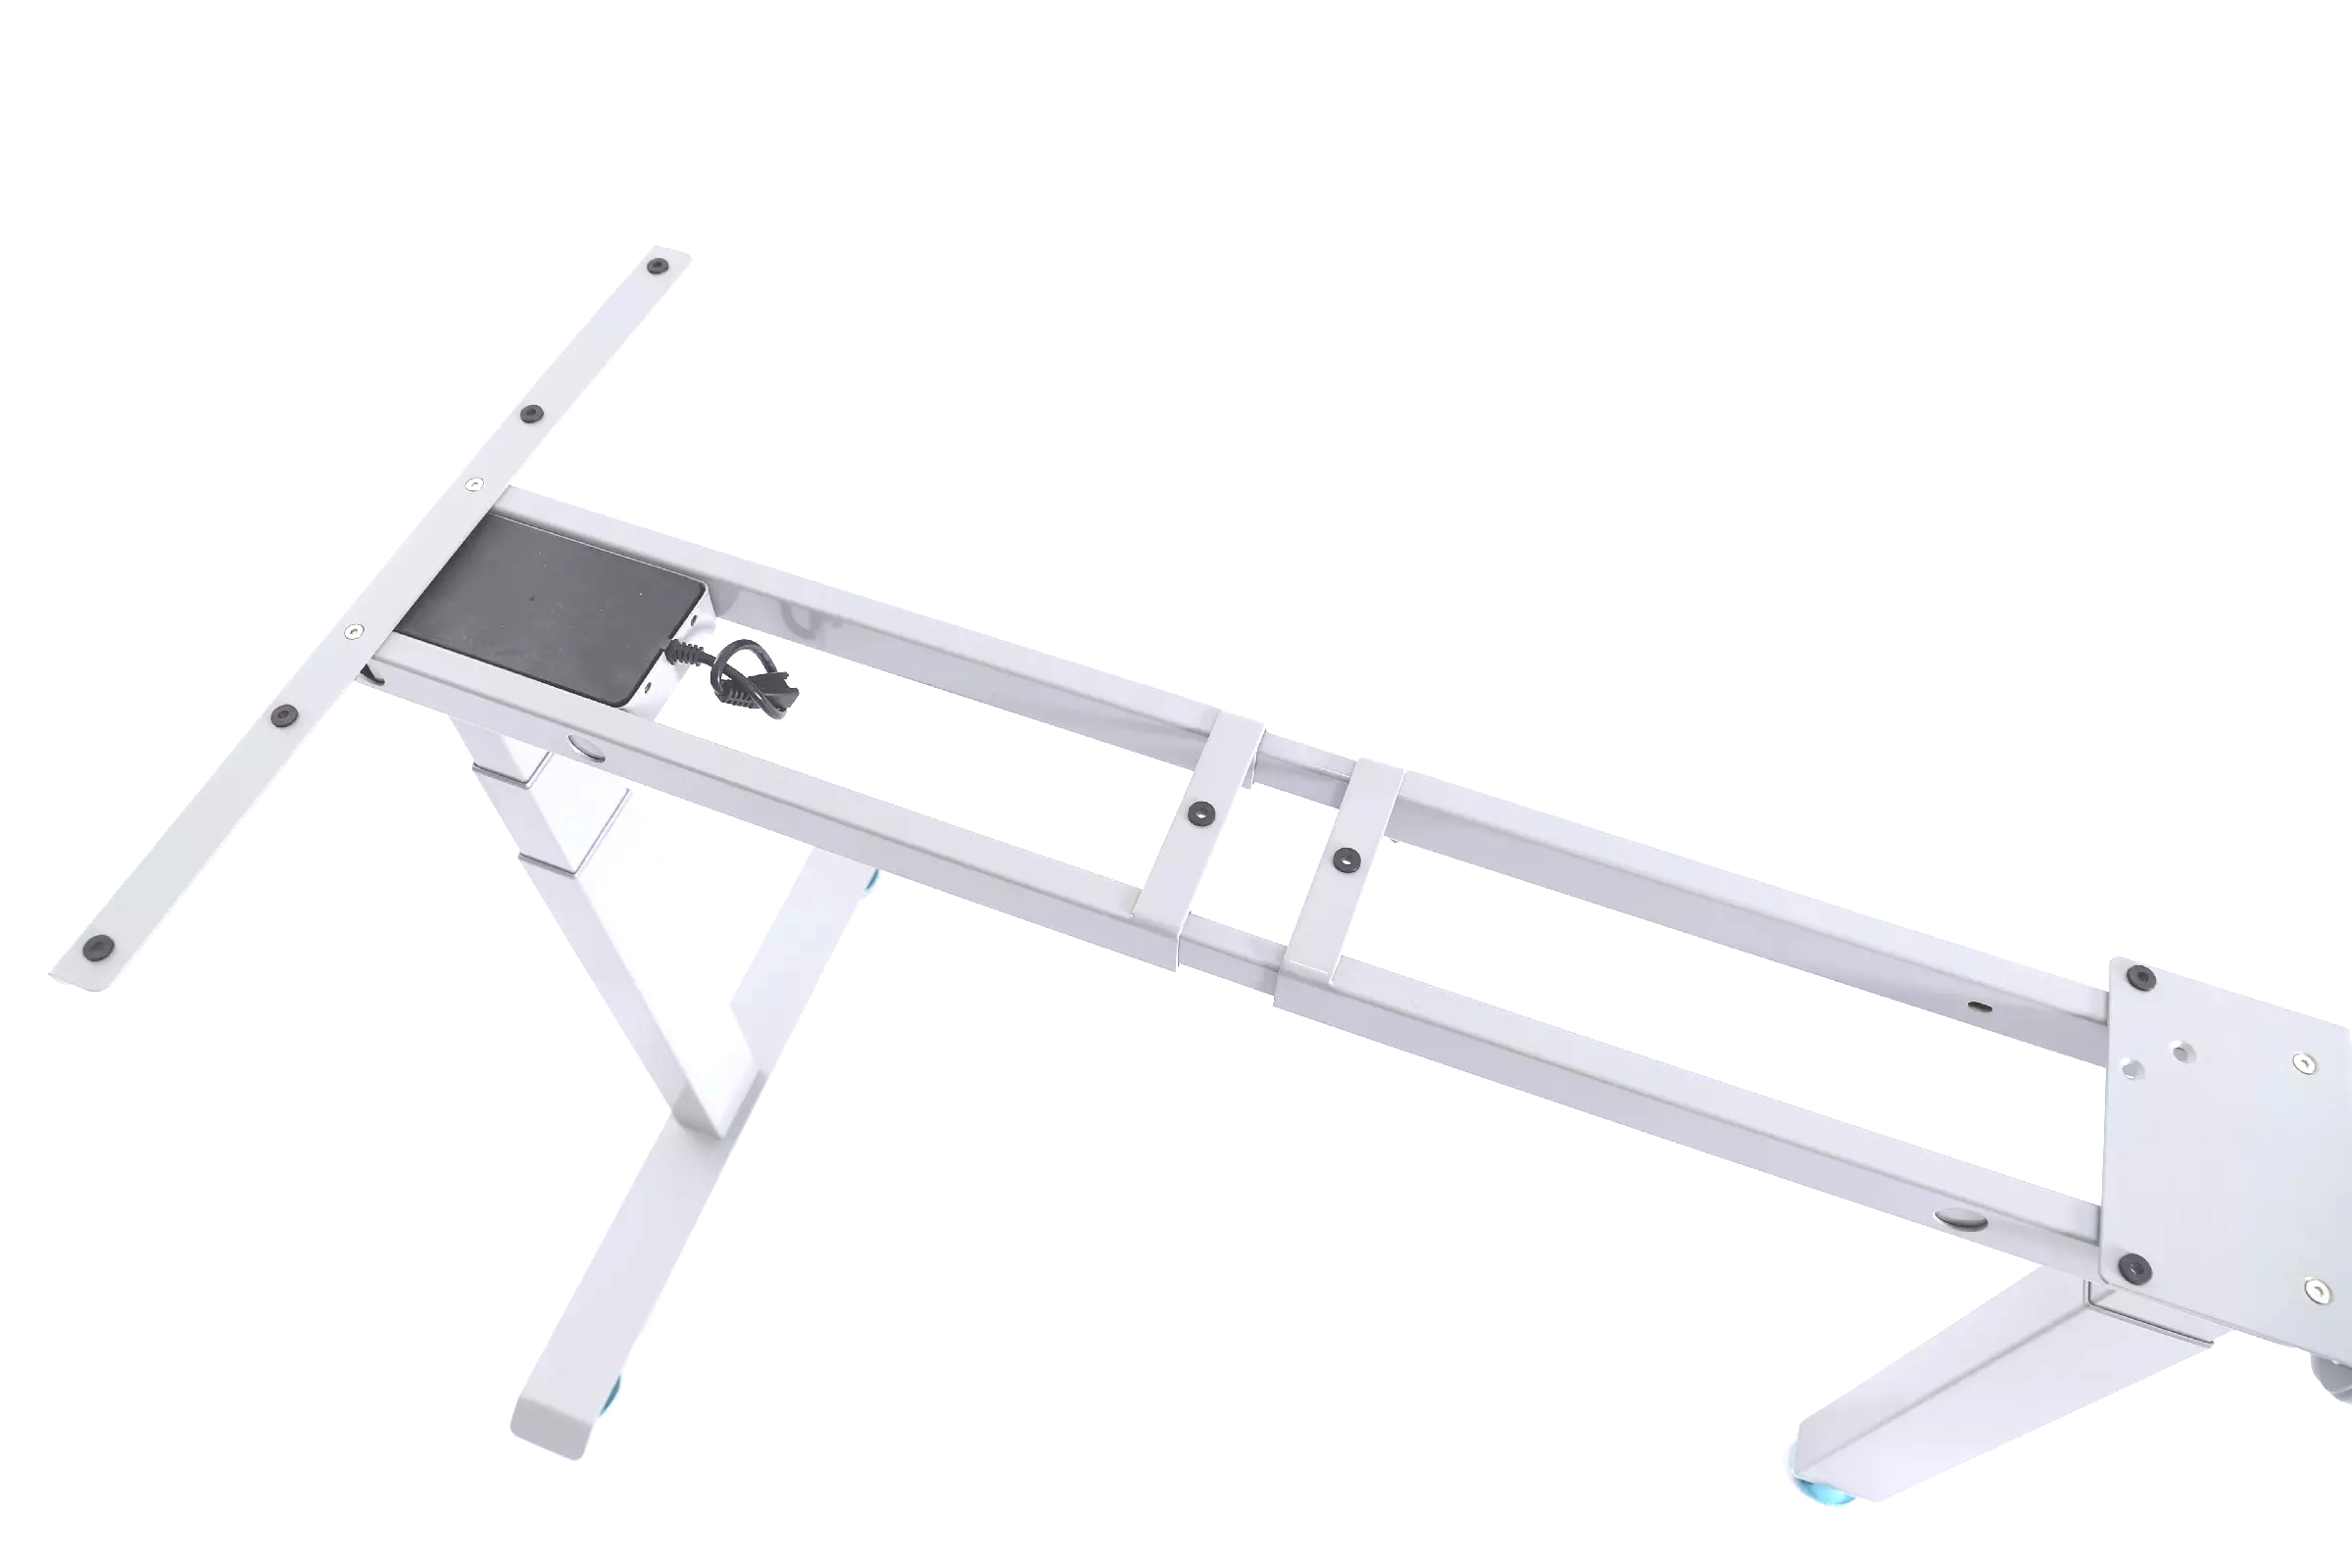 Elektrisch höhenverstellbares Tischgestell mit 3 Standfüßen und einer max. Höhe von 1250 mm, weiß (1 Stück)